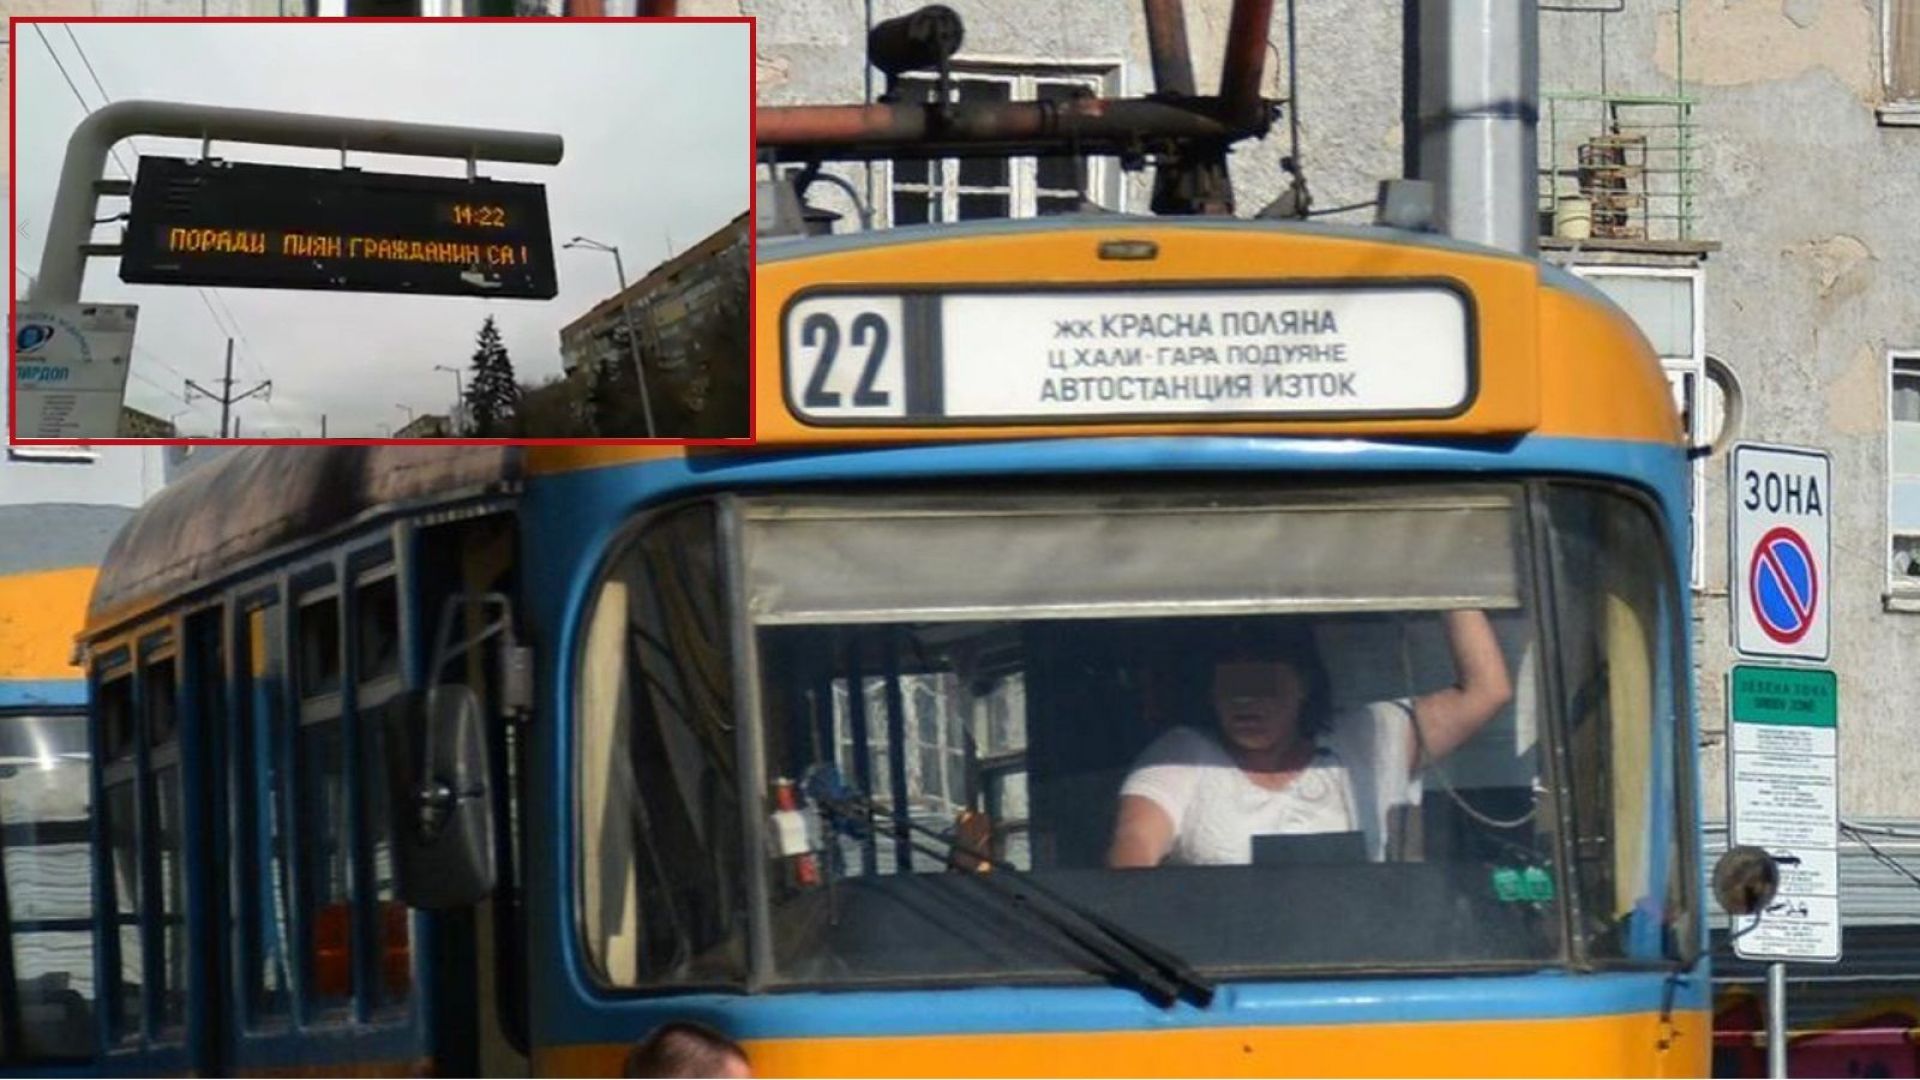 Ето го най-популярното табло на спирка в София: Пиян промени маршрута на трамваите